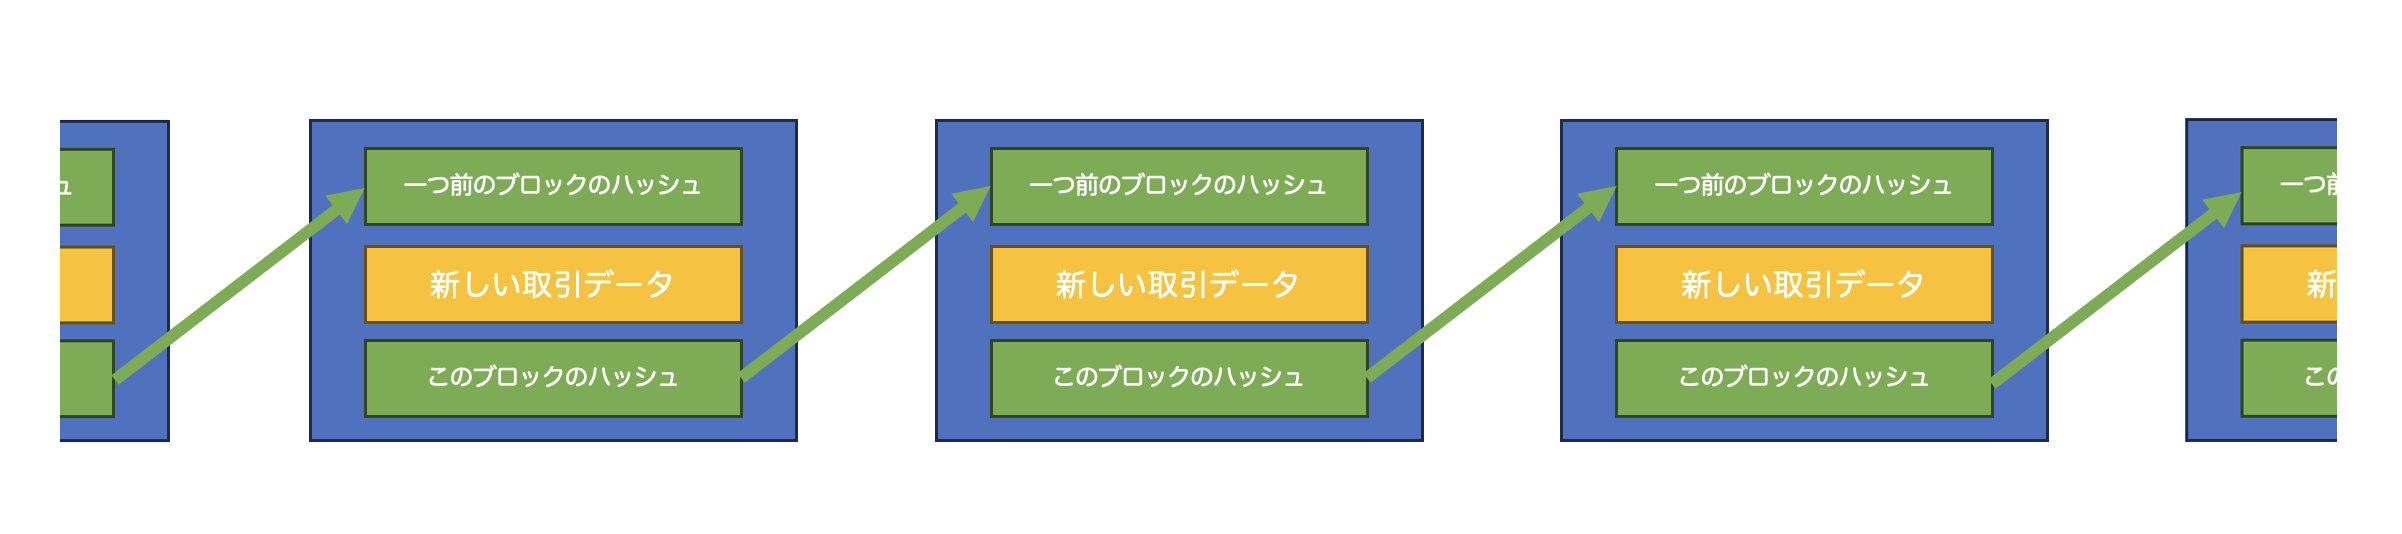 図4:ブロックチェーンの仕組み